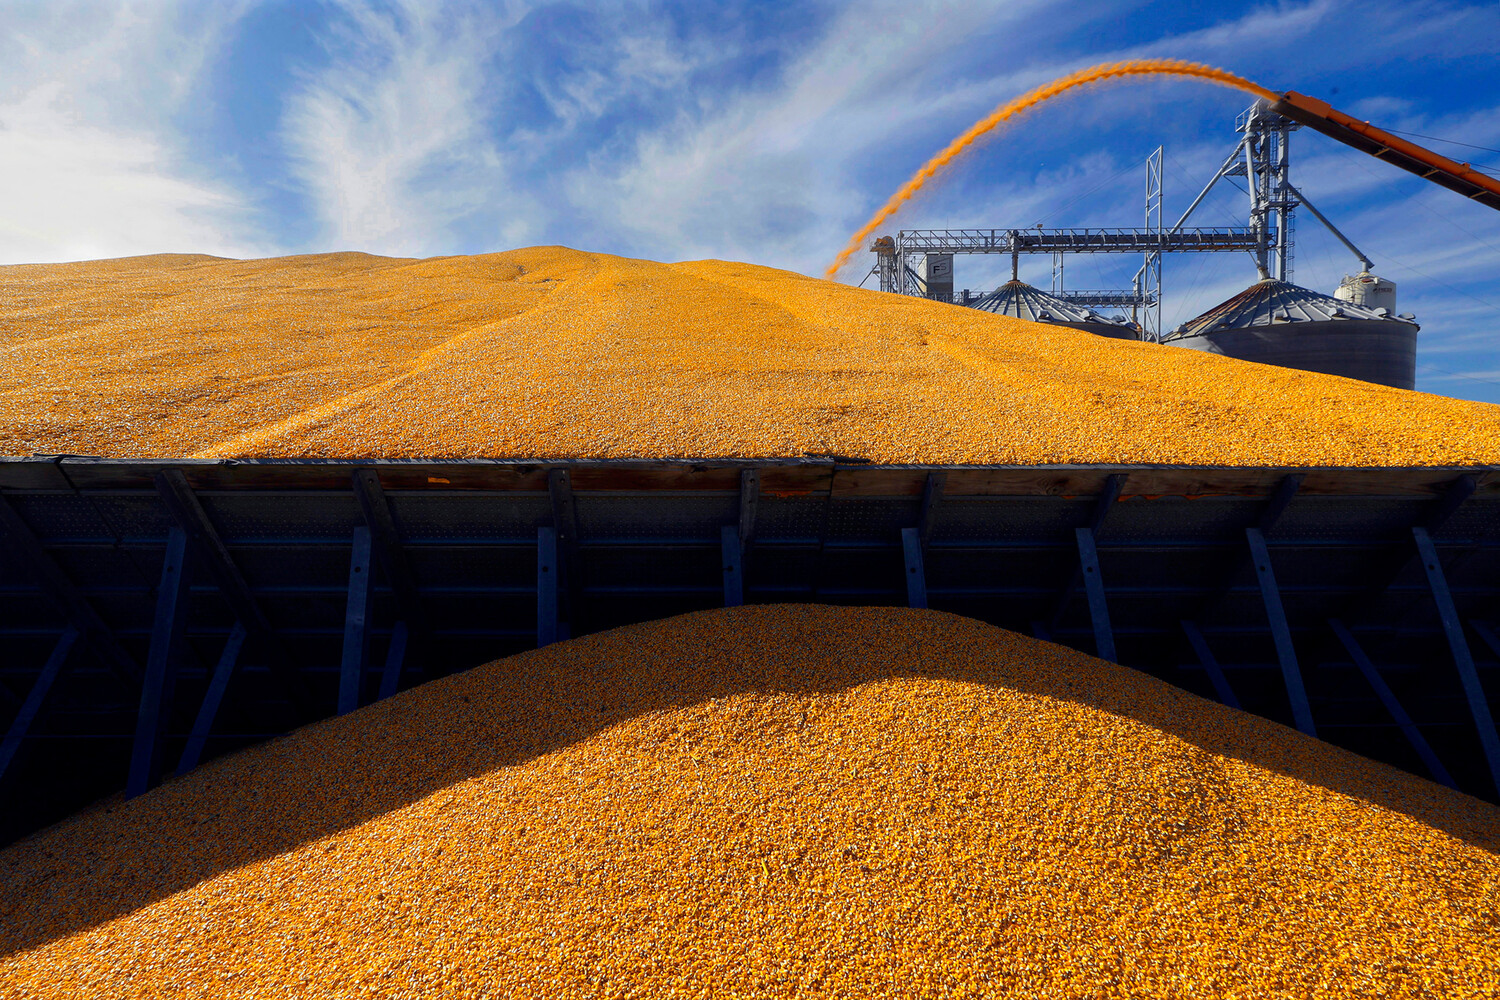  В первом квартале Россия поставила в КНР зерно на 125 миллионов долларов